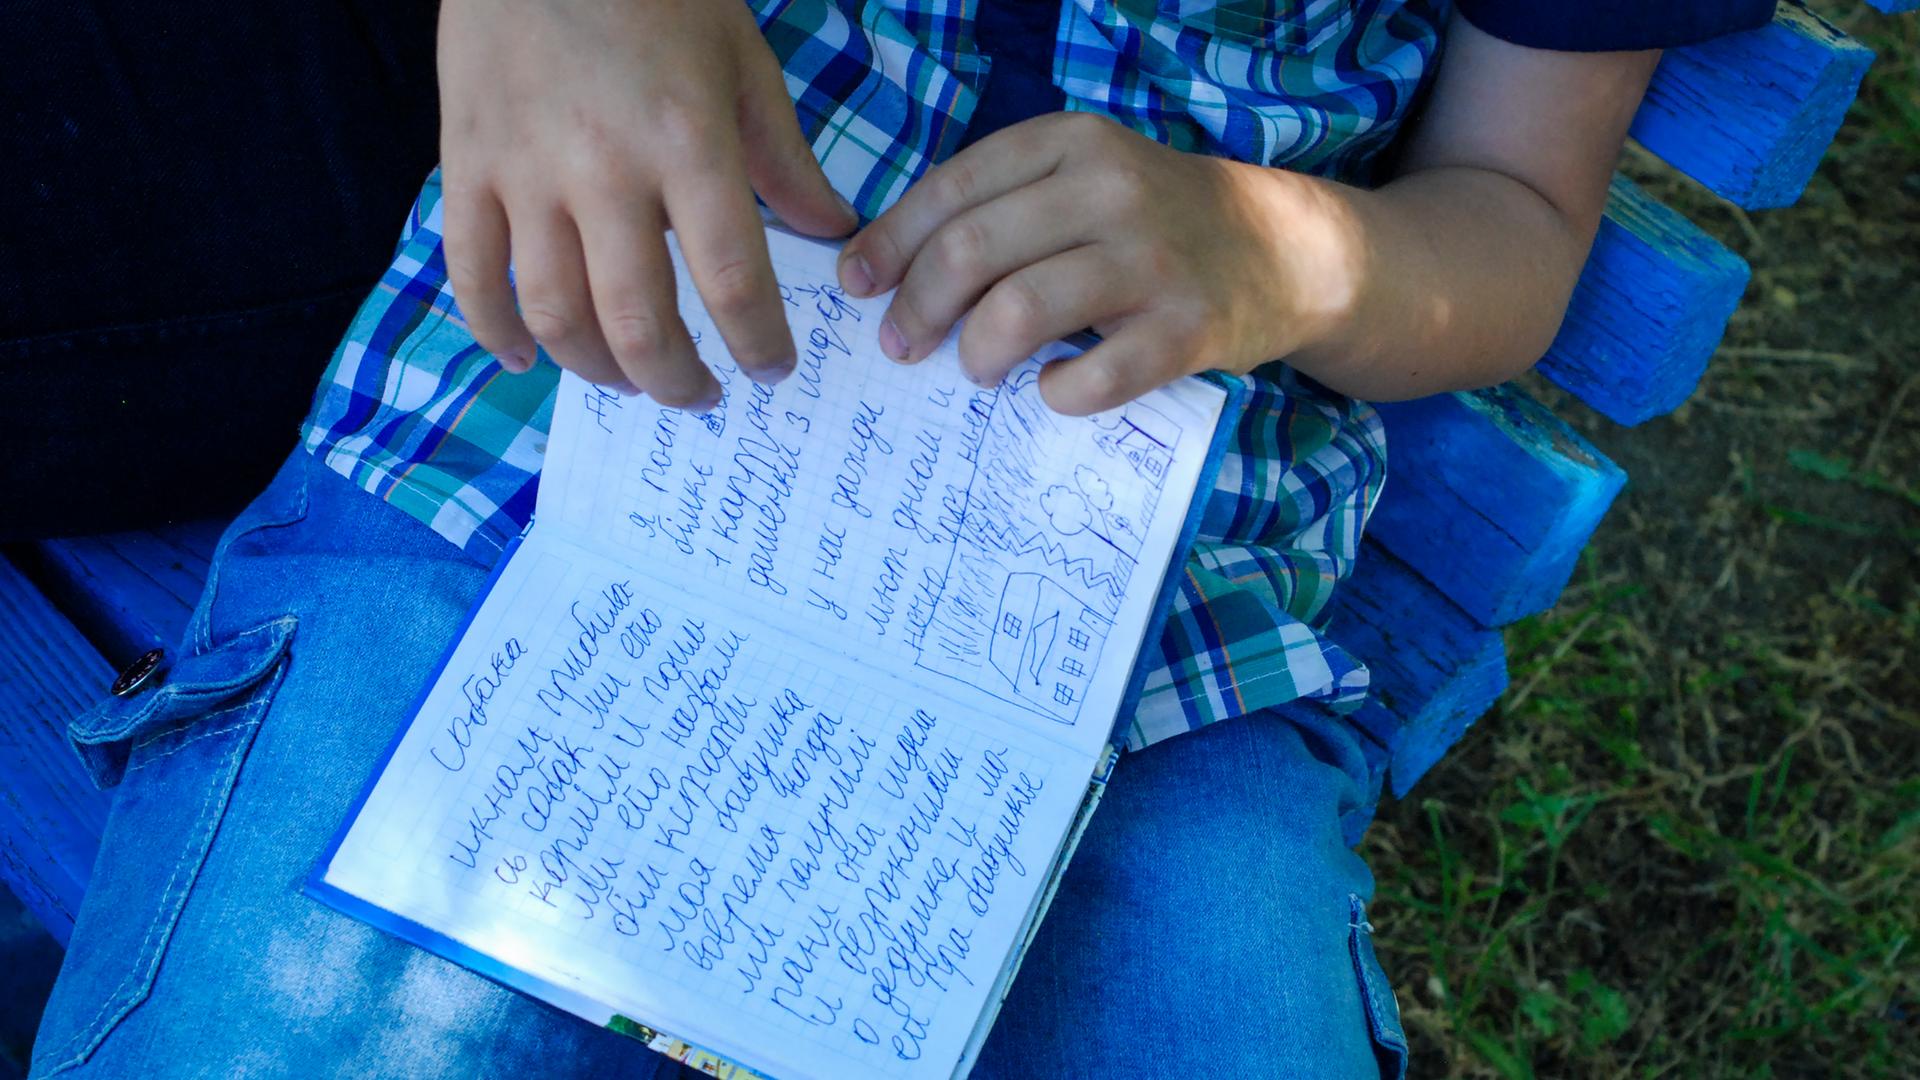 Der achtjährige Egor hält ein kleines blaues Buch in seiner Hand. Er schrieb in Mariupol Tagebuch, als um die Stadt blutig gekämpft wurde. Auf der aufgeschlagenen Seite steht neben einer kleinen Kinderzeichnung: "Ich habe gut geschlafen, habe gelächelt und 25 Seiten gelesen. Außerdem ist mein Großvater gestorben am 26.April. Saporischschja, 3. Juni 2022."